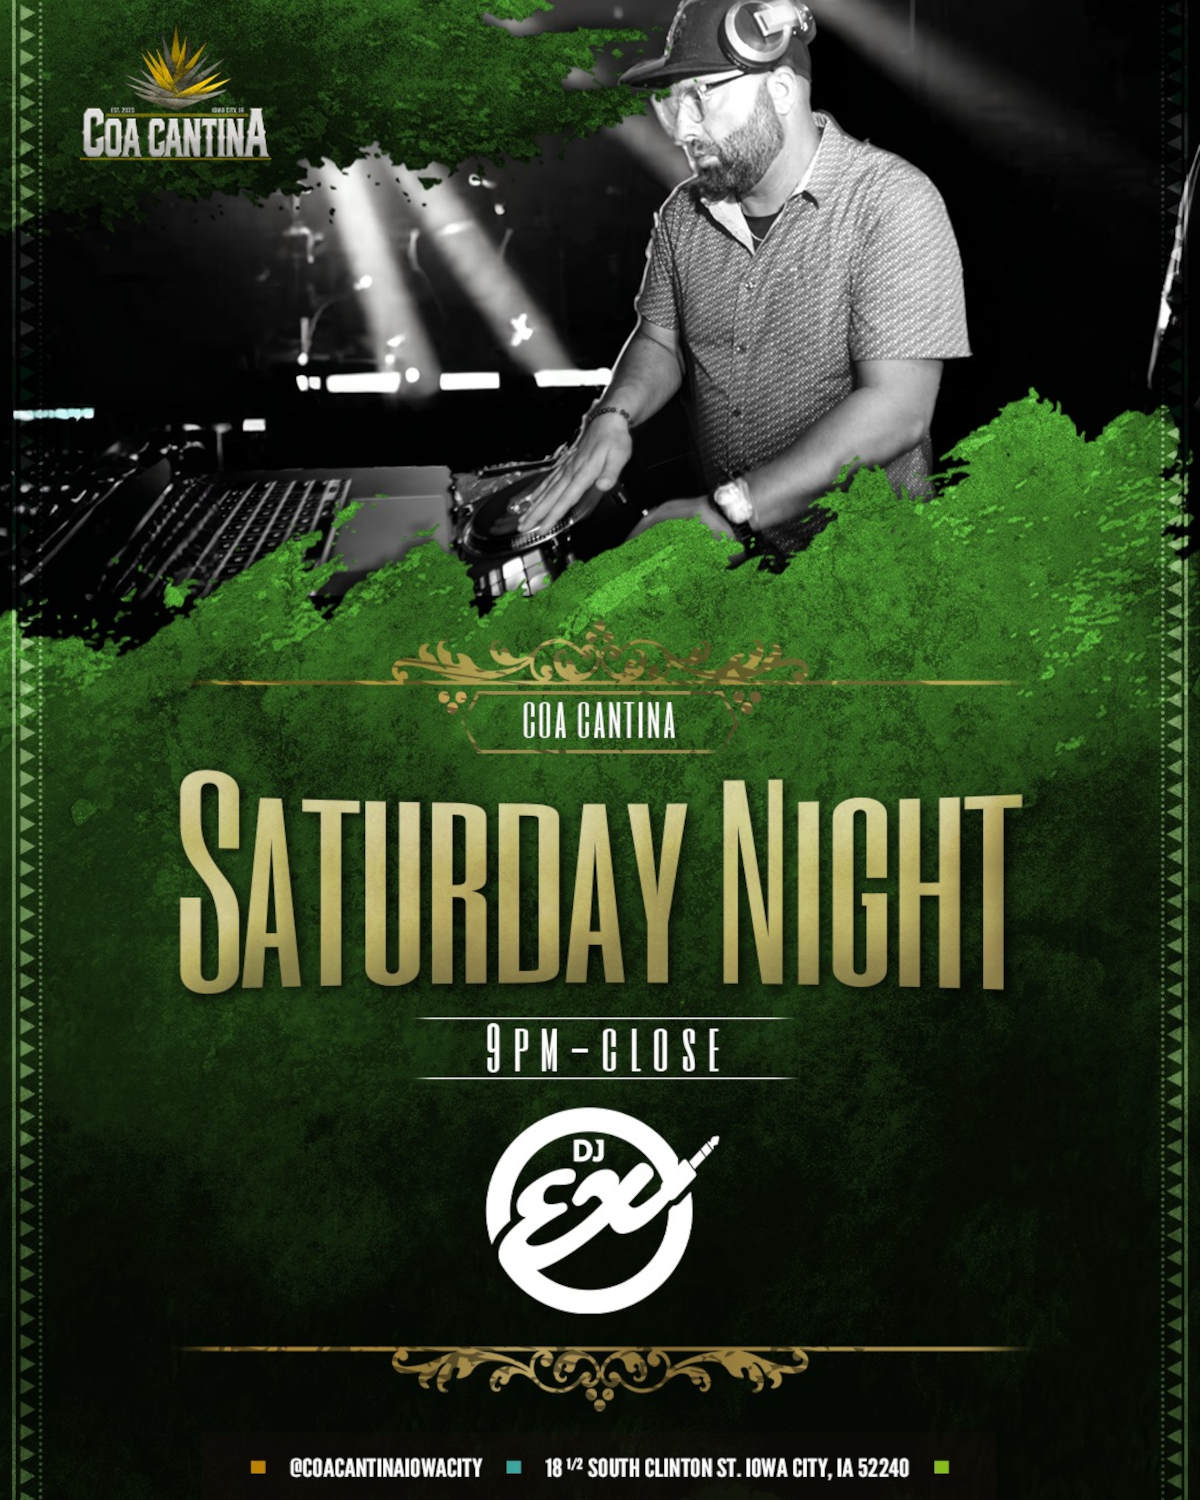 Saturday Night 9pm -close DJ ex poster